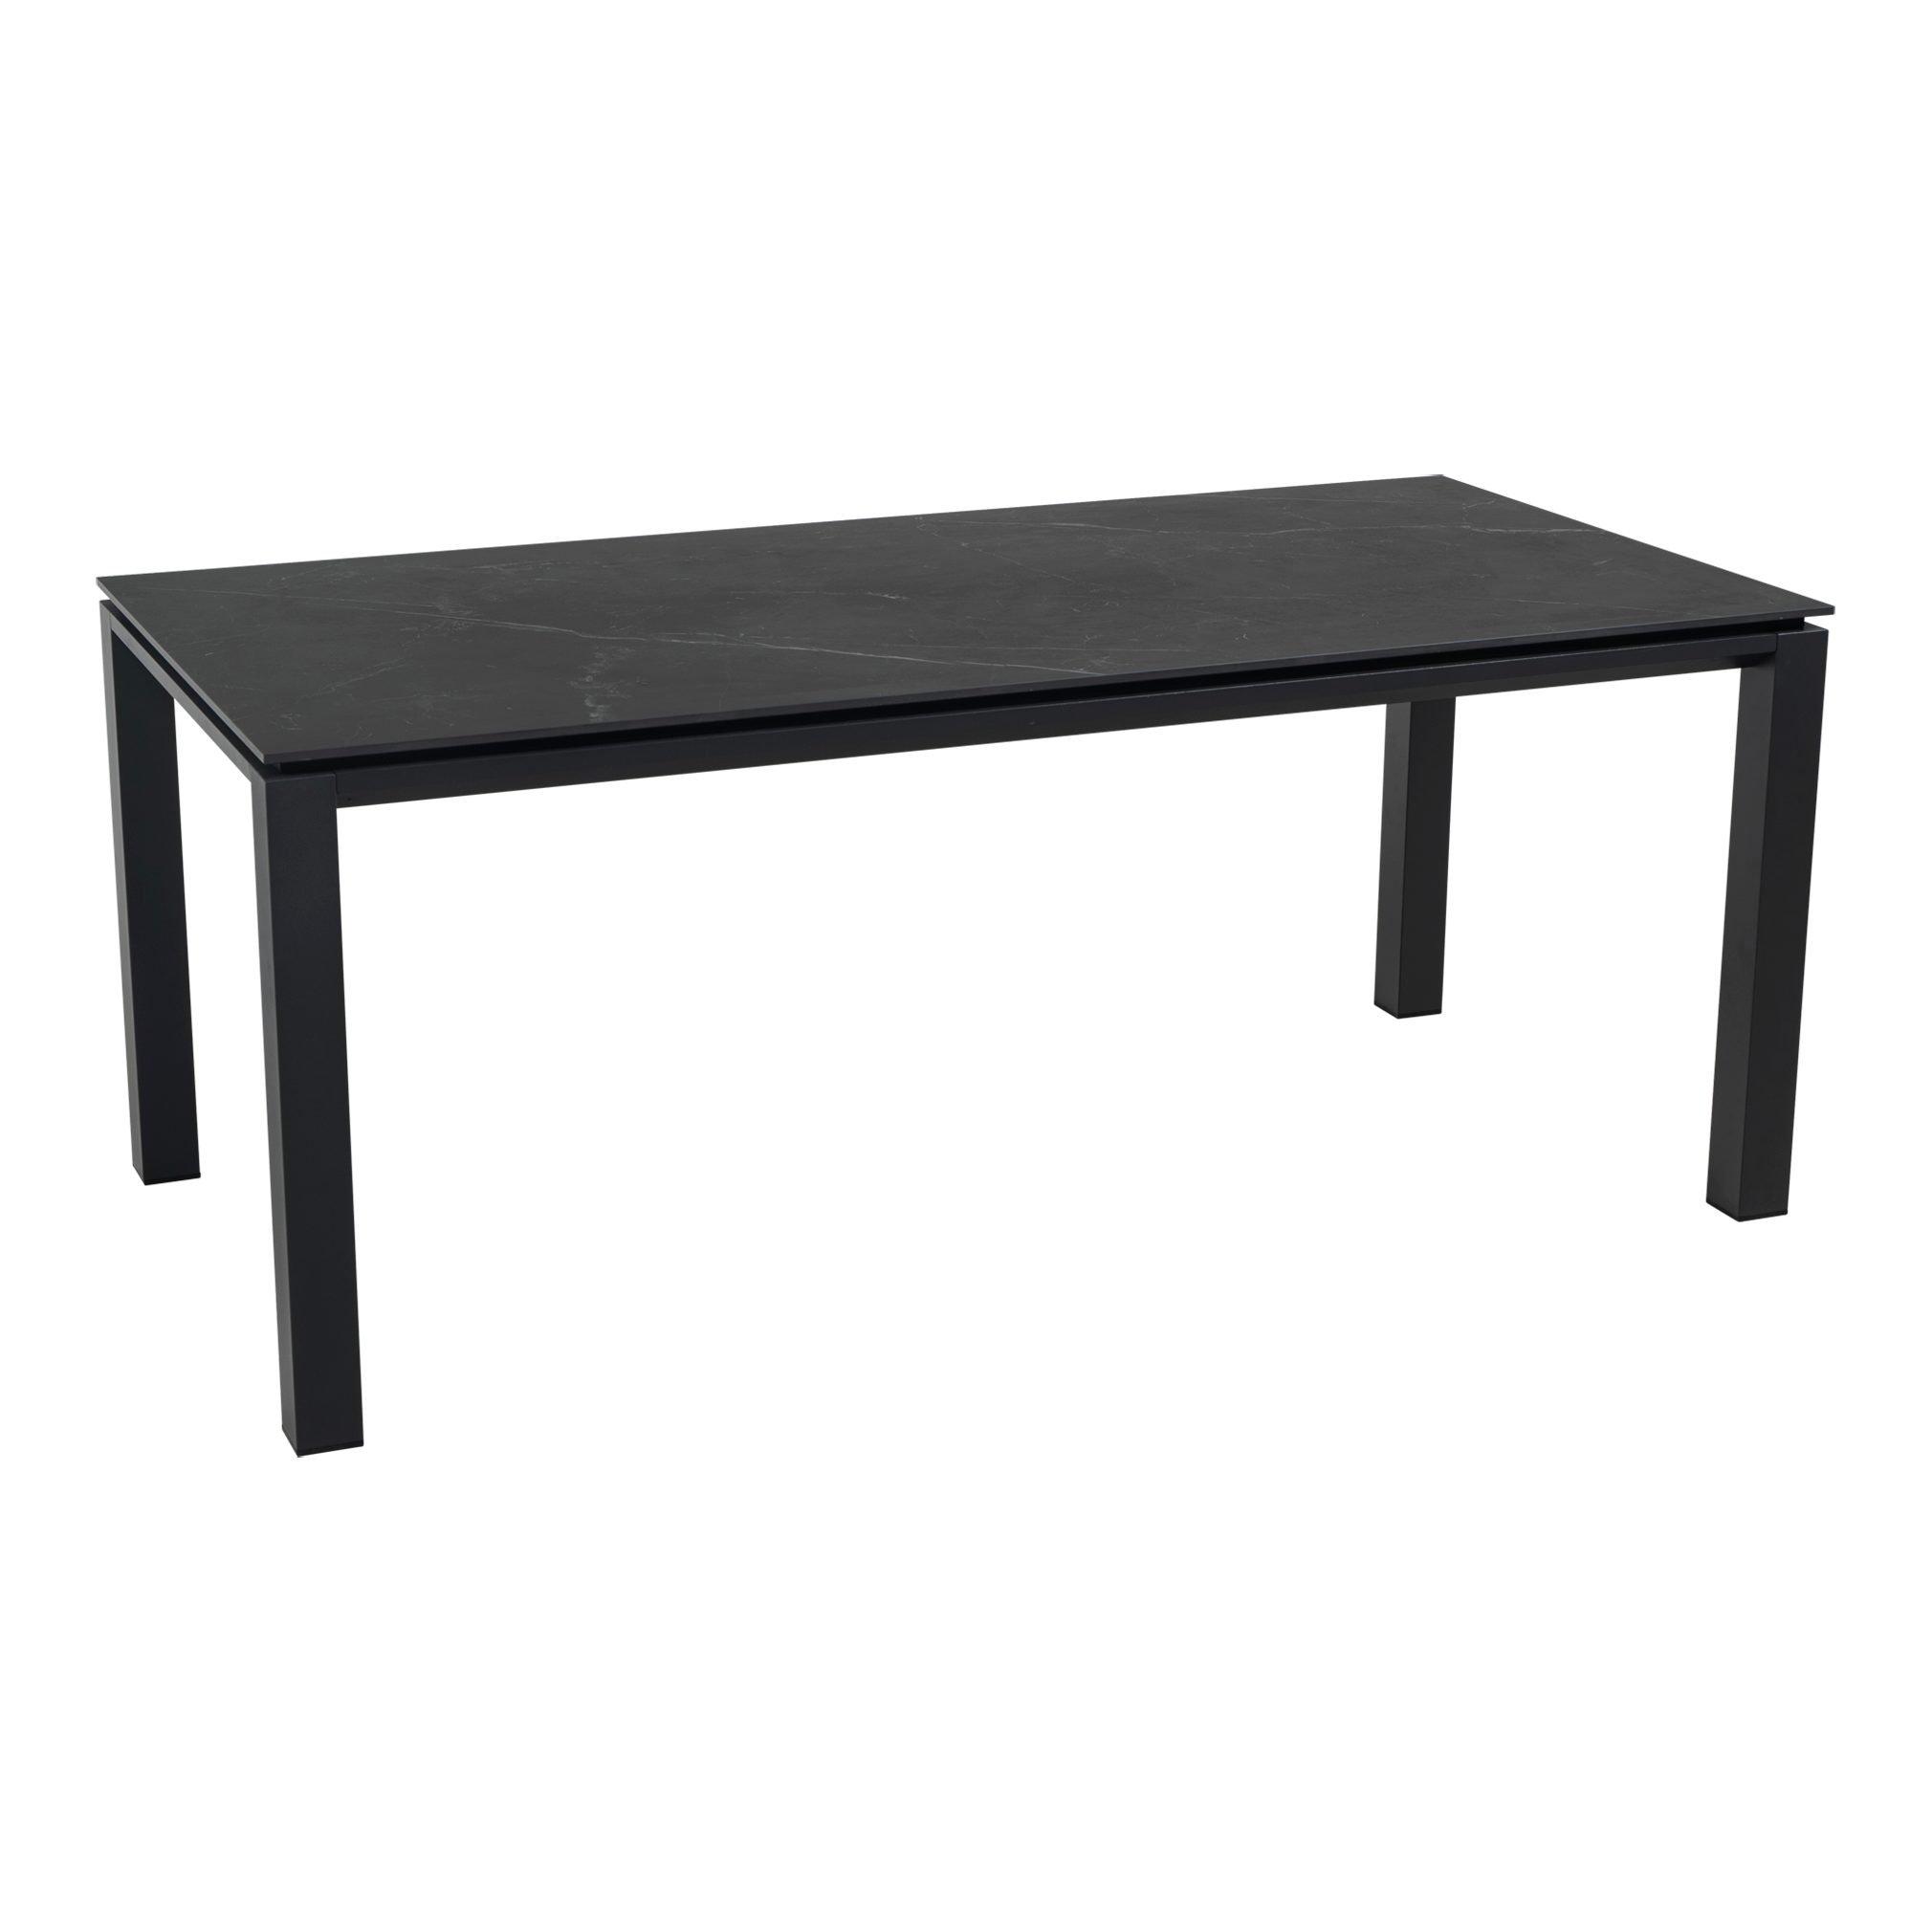 Lesli Living Gartentisch Gartentisch Tisch Pardo Carlo cm Marmoroptik schwarz 180 Monte